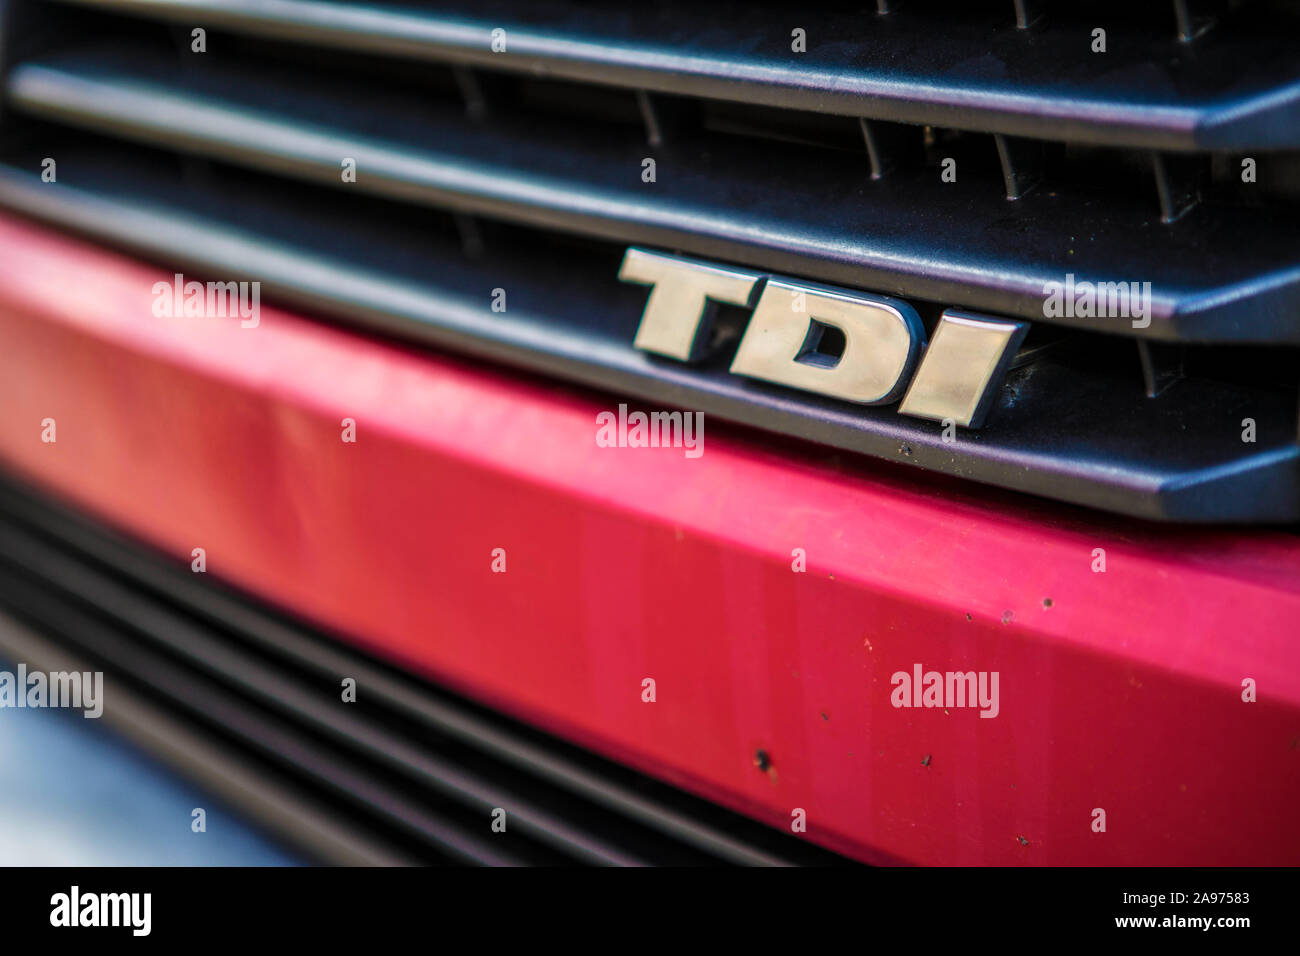 Ein VW Bus T4 mit der Kennzeichnung TDI auf dem Kühlergrill. TDI bezeichnet die Turbodiesel, deren Abgaswerte die Volkswagen AG mit Hilfe einer manipu Stock Photo